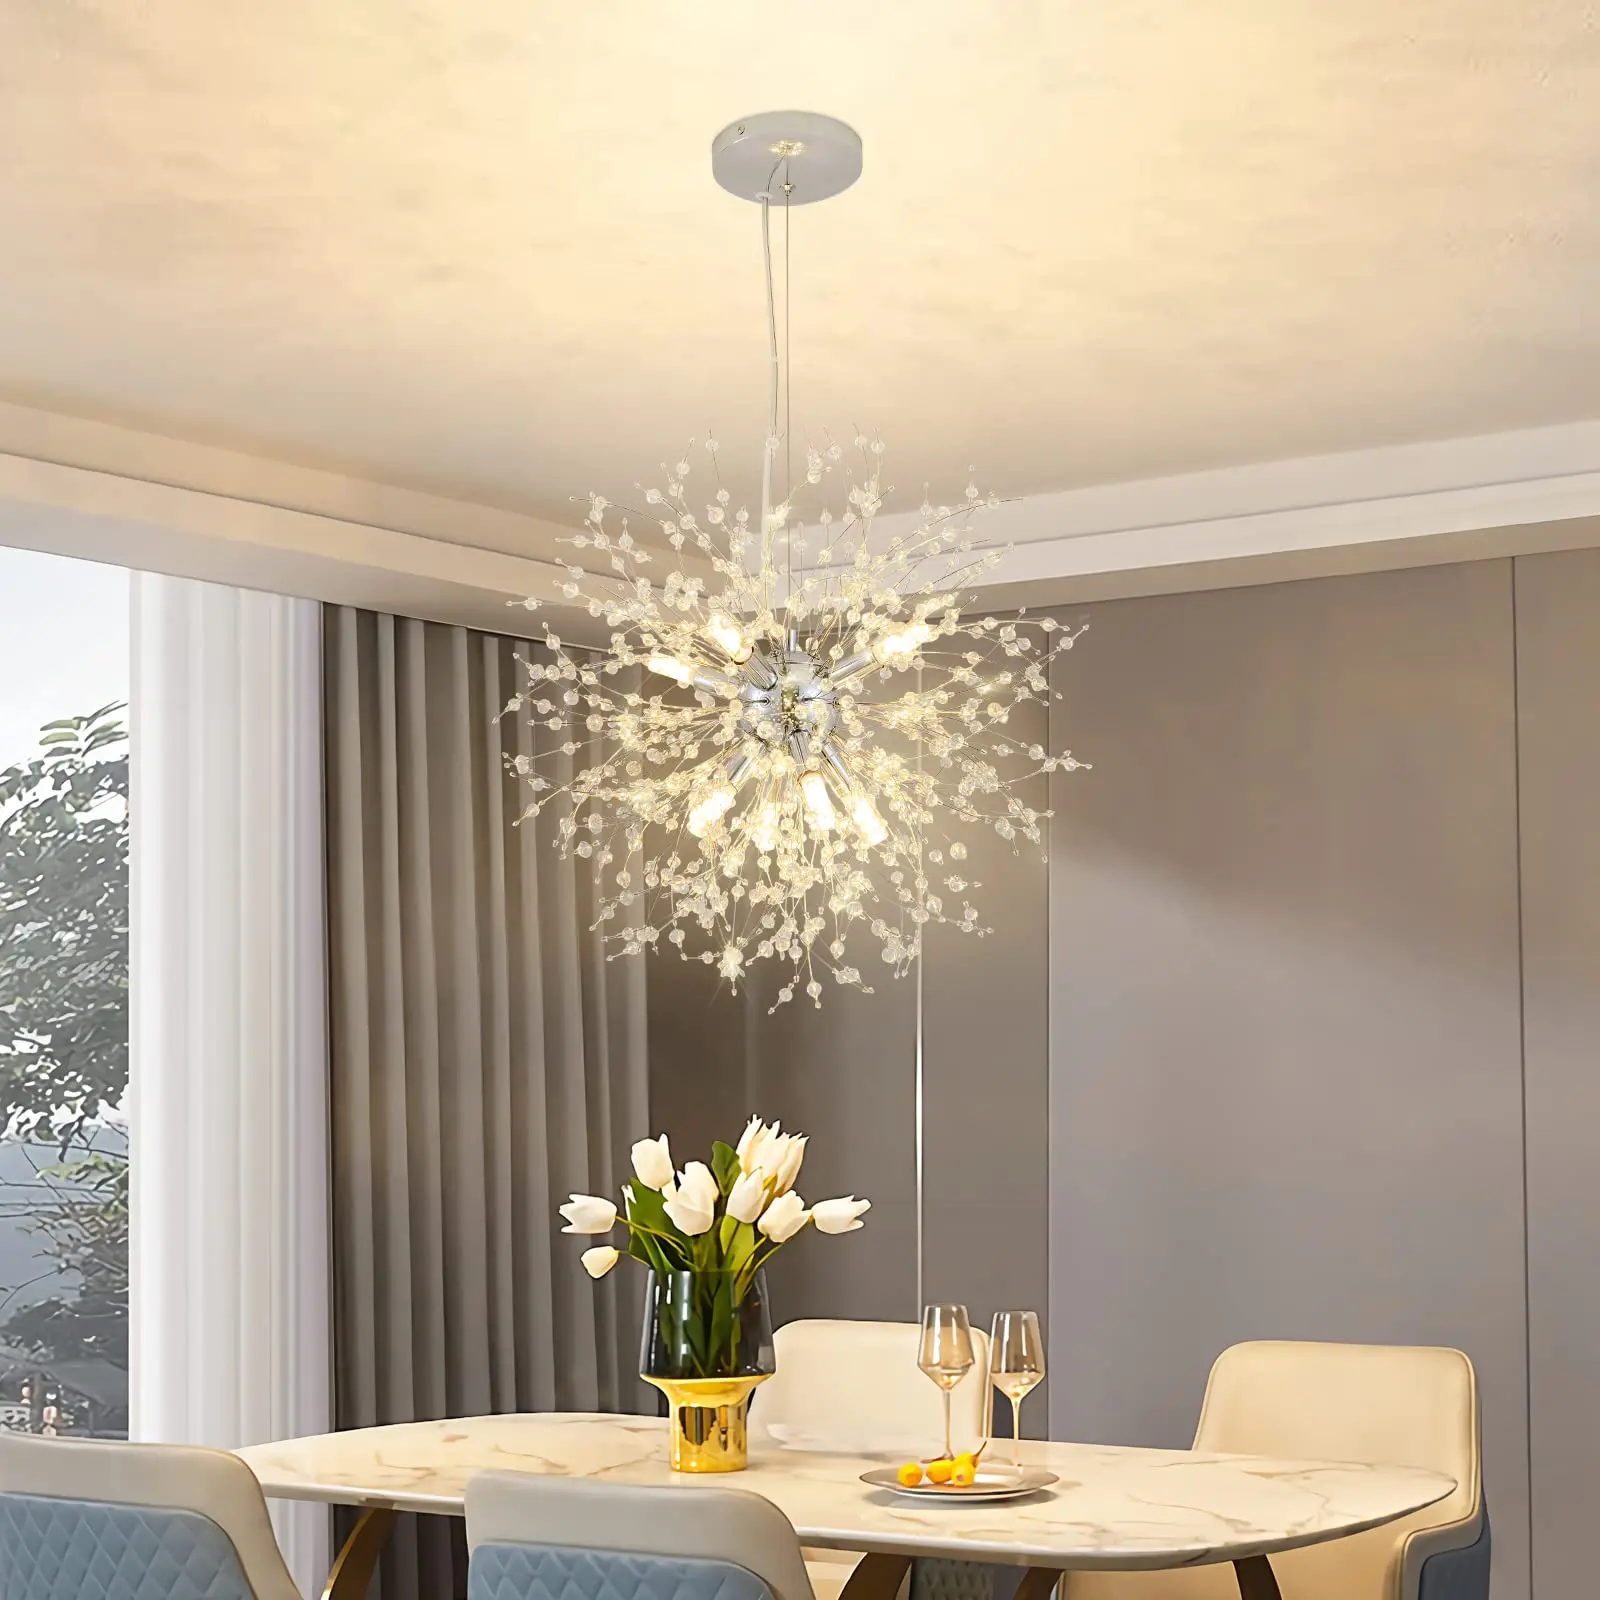 K sputnik ceiling light fixtures sputnik chandelier for bedroom living room dining room thumb200